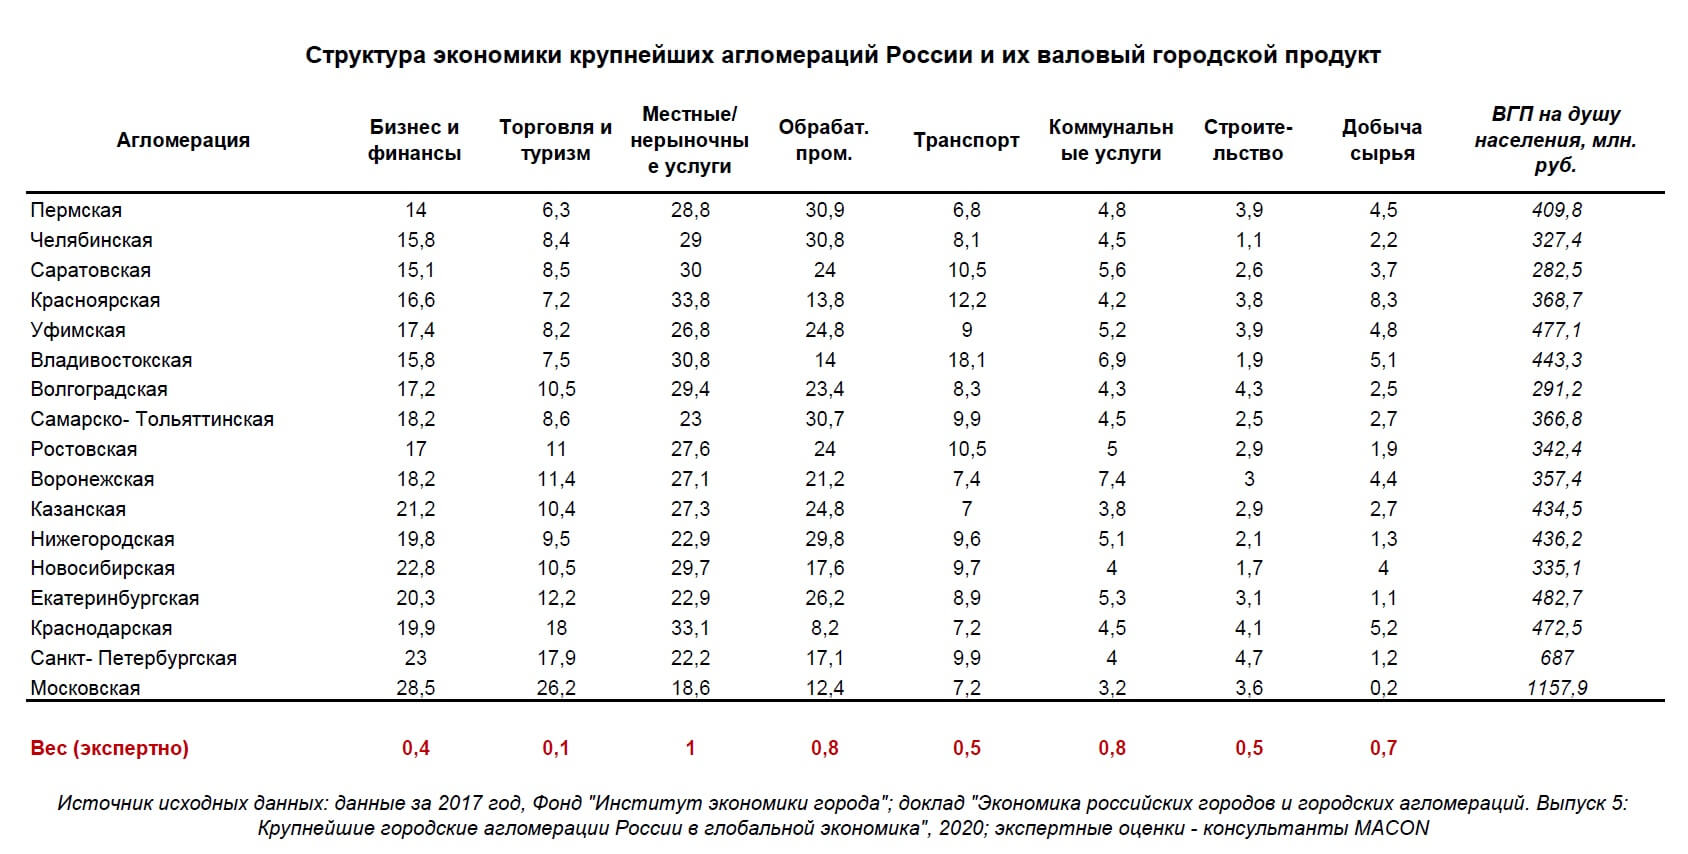 La estructura de la economía y el PIB de las aglomeraciones rusas.